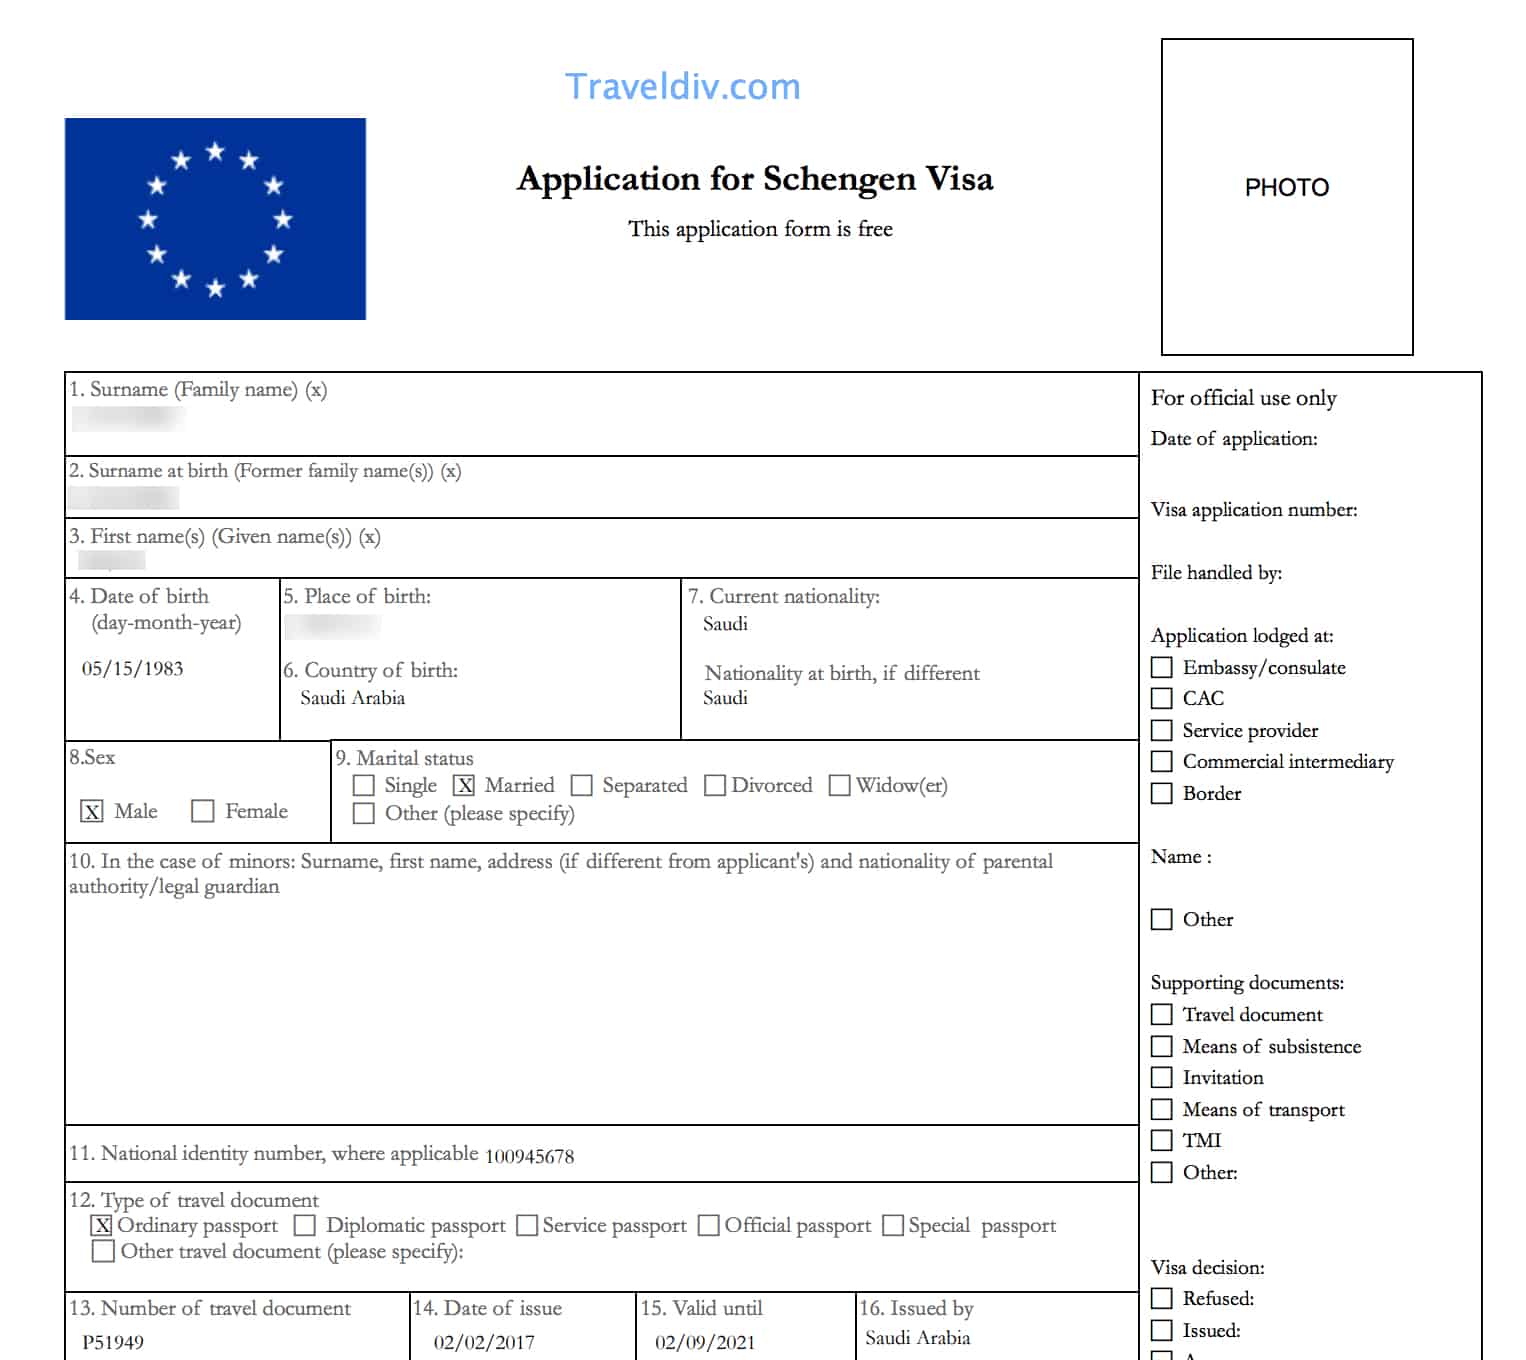 الطريقة الجديدة و المعتمدة لتقديم تأشيرة الشنغن الفرنسية 2020 ترافيل ديف